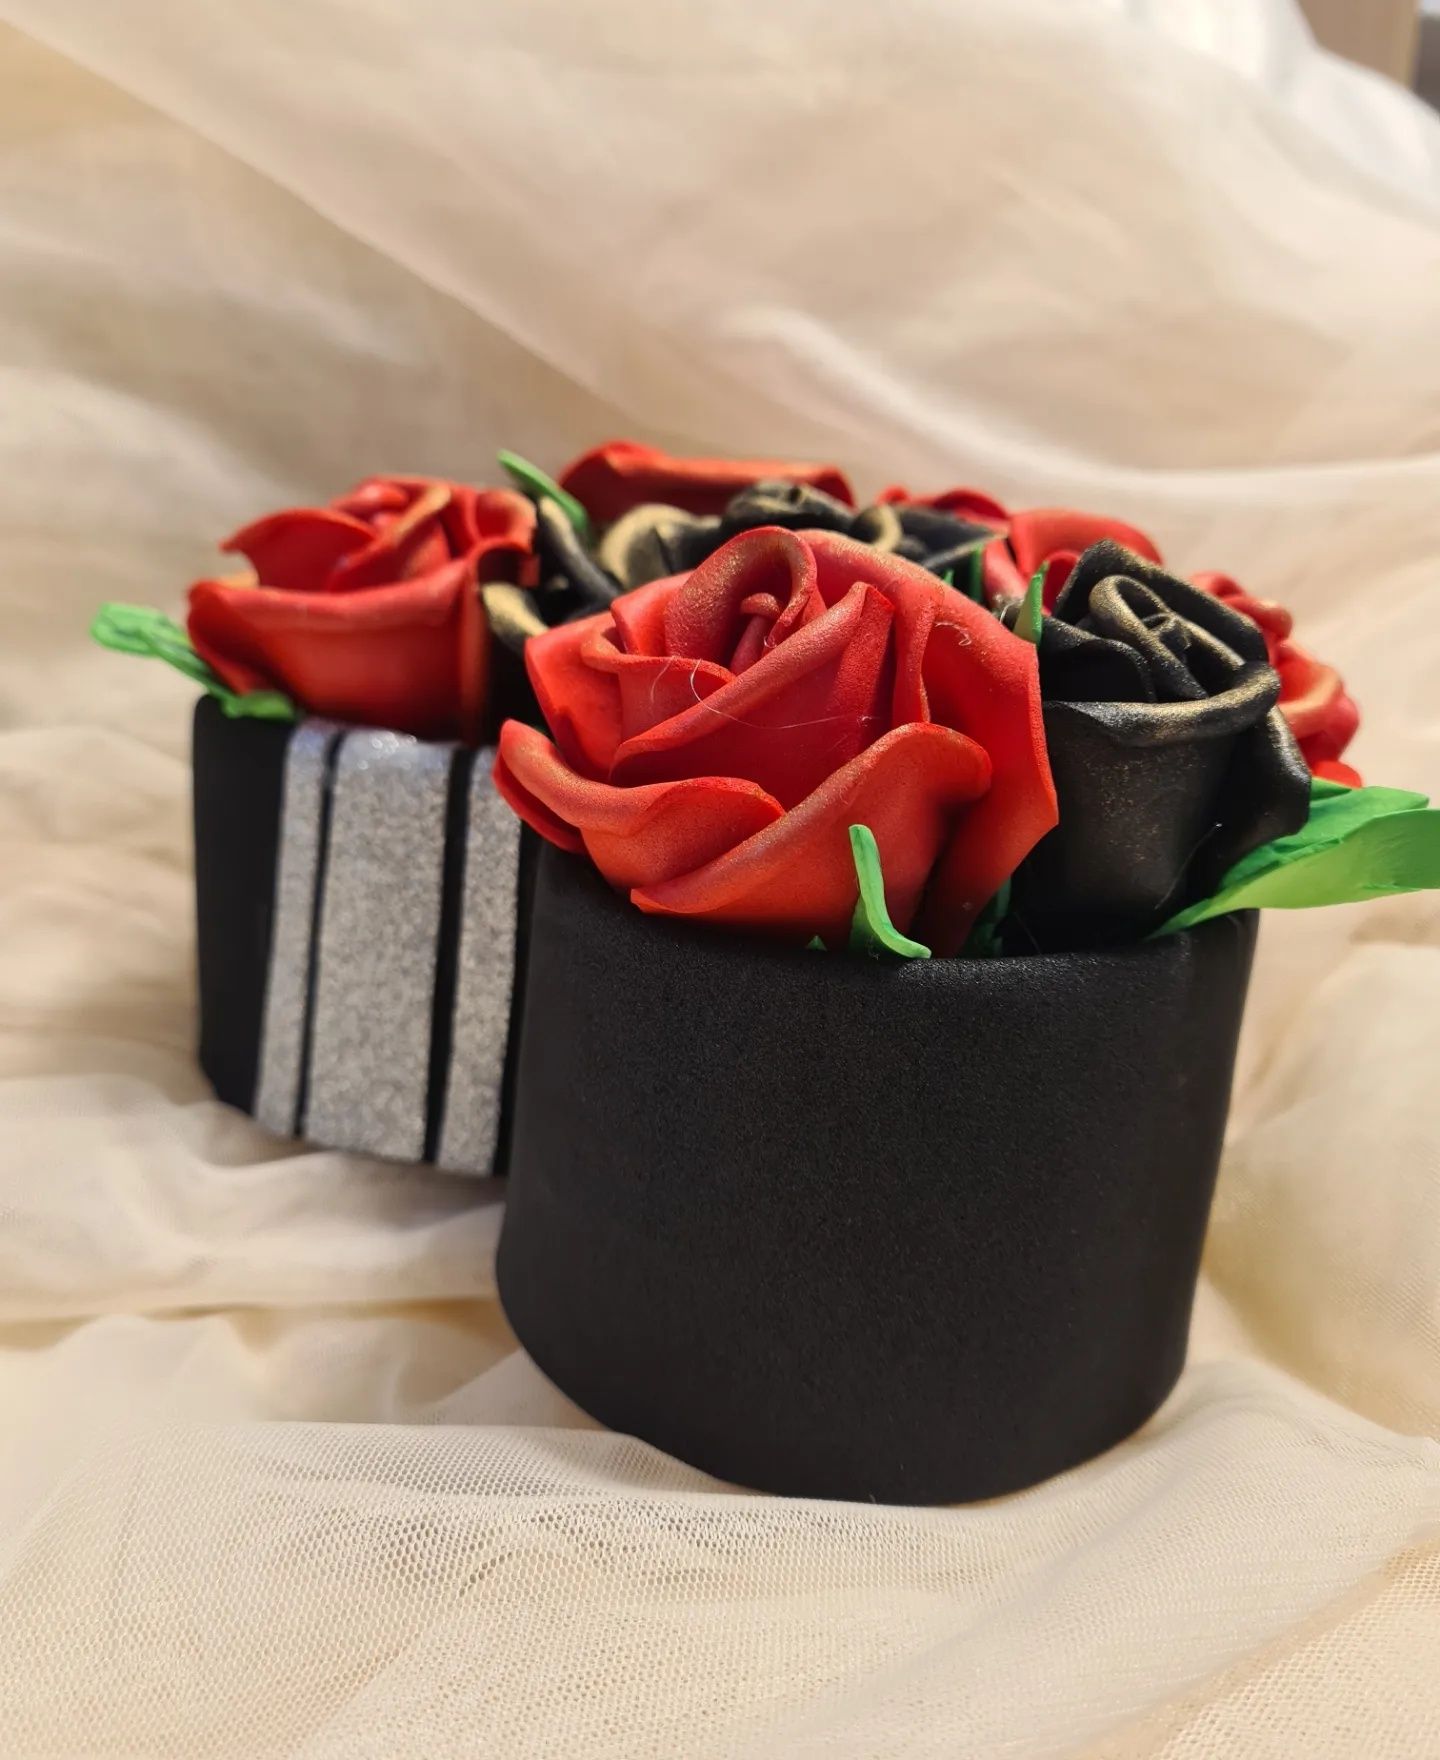 Cadou pentru ziua îndrăgostiților trandafiri